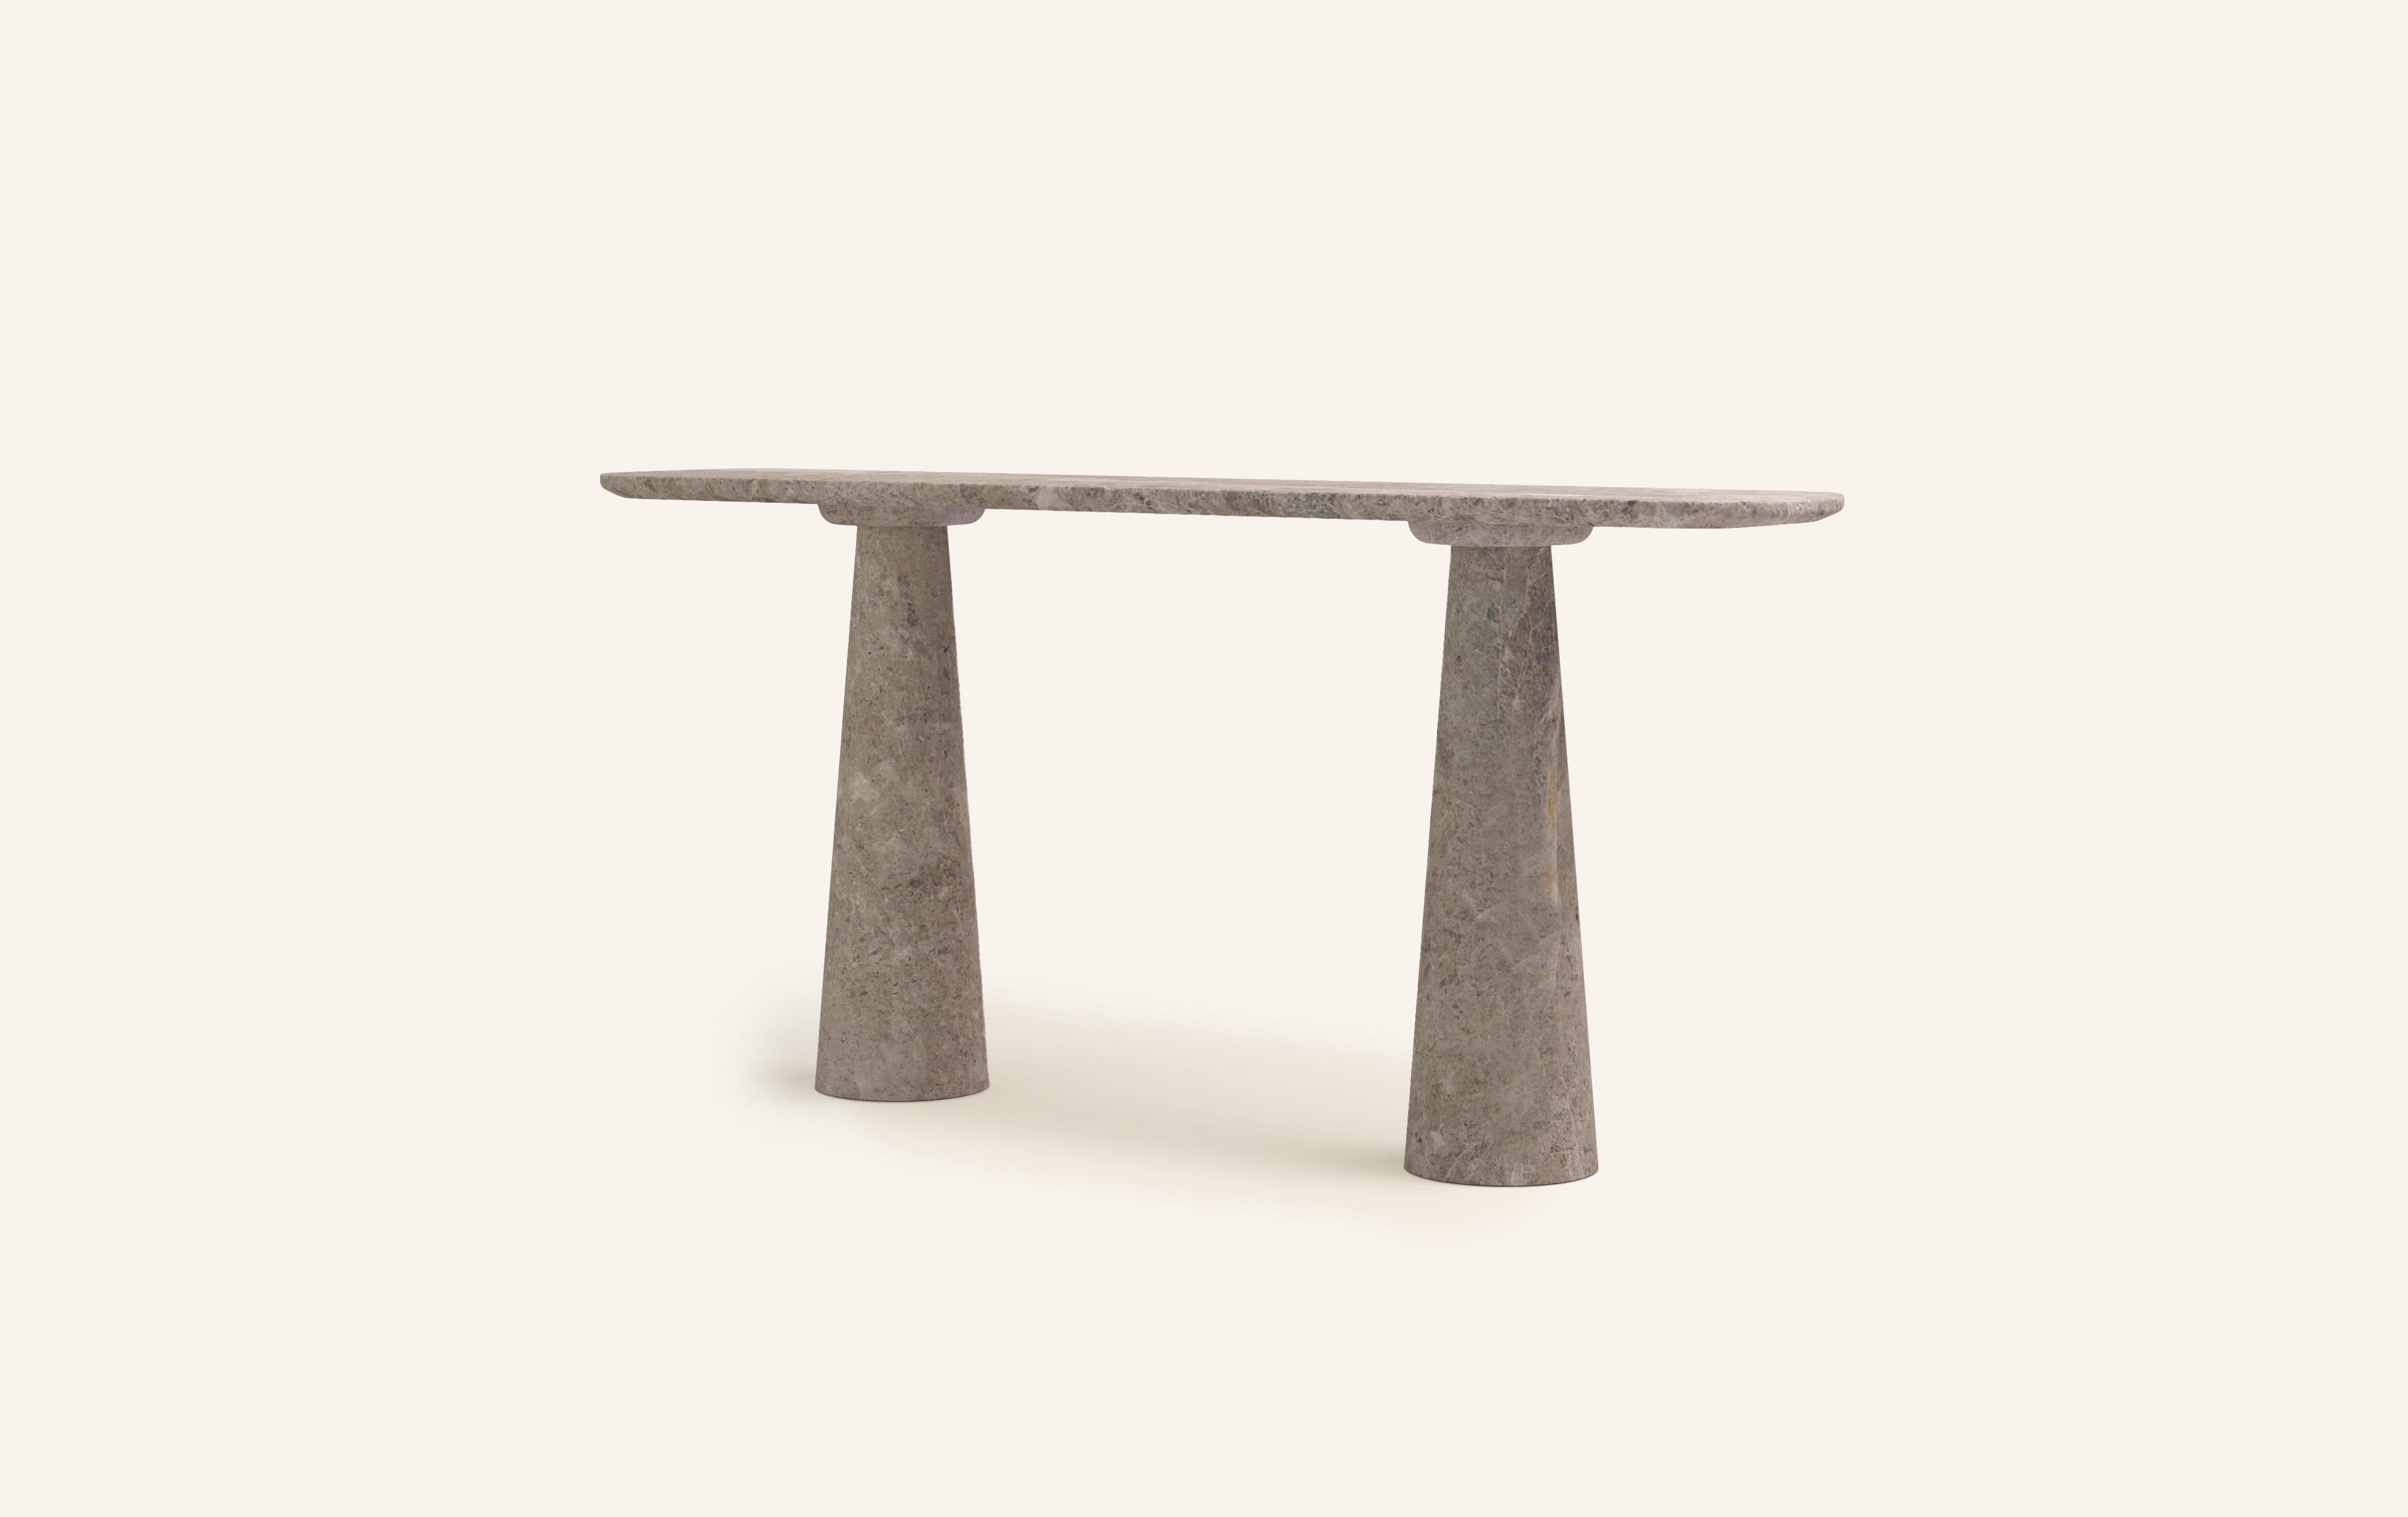 American FORM(LA) Cono Console Table 60”L x 15”W x 33”H Tundra Gray Marble For Sale